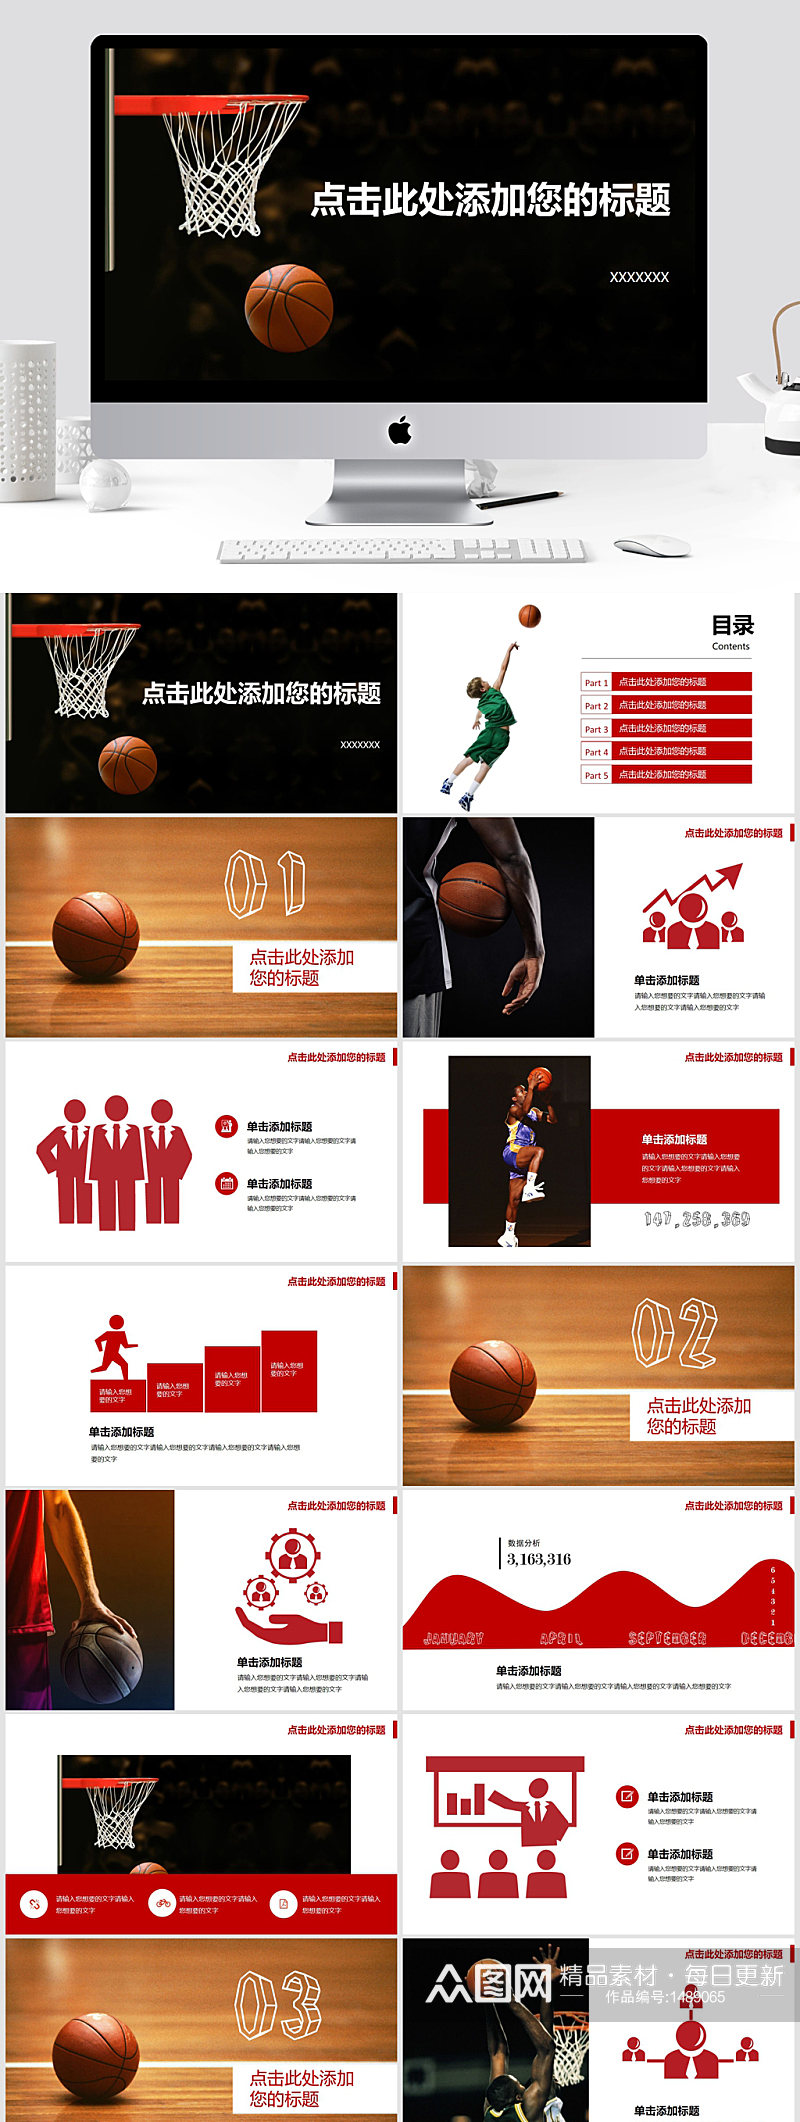 篮球主题篮球教学PPT模板素材